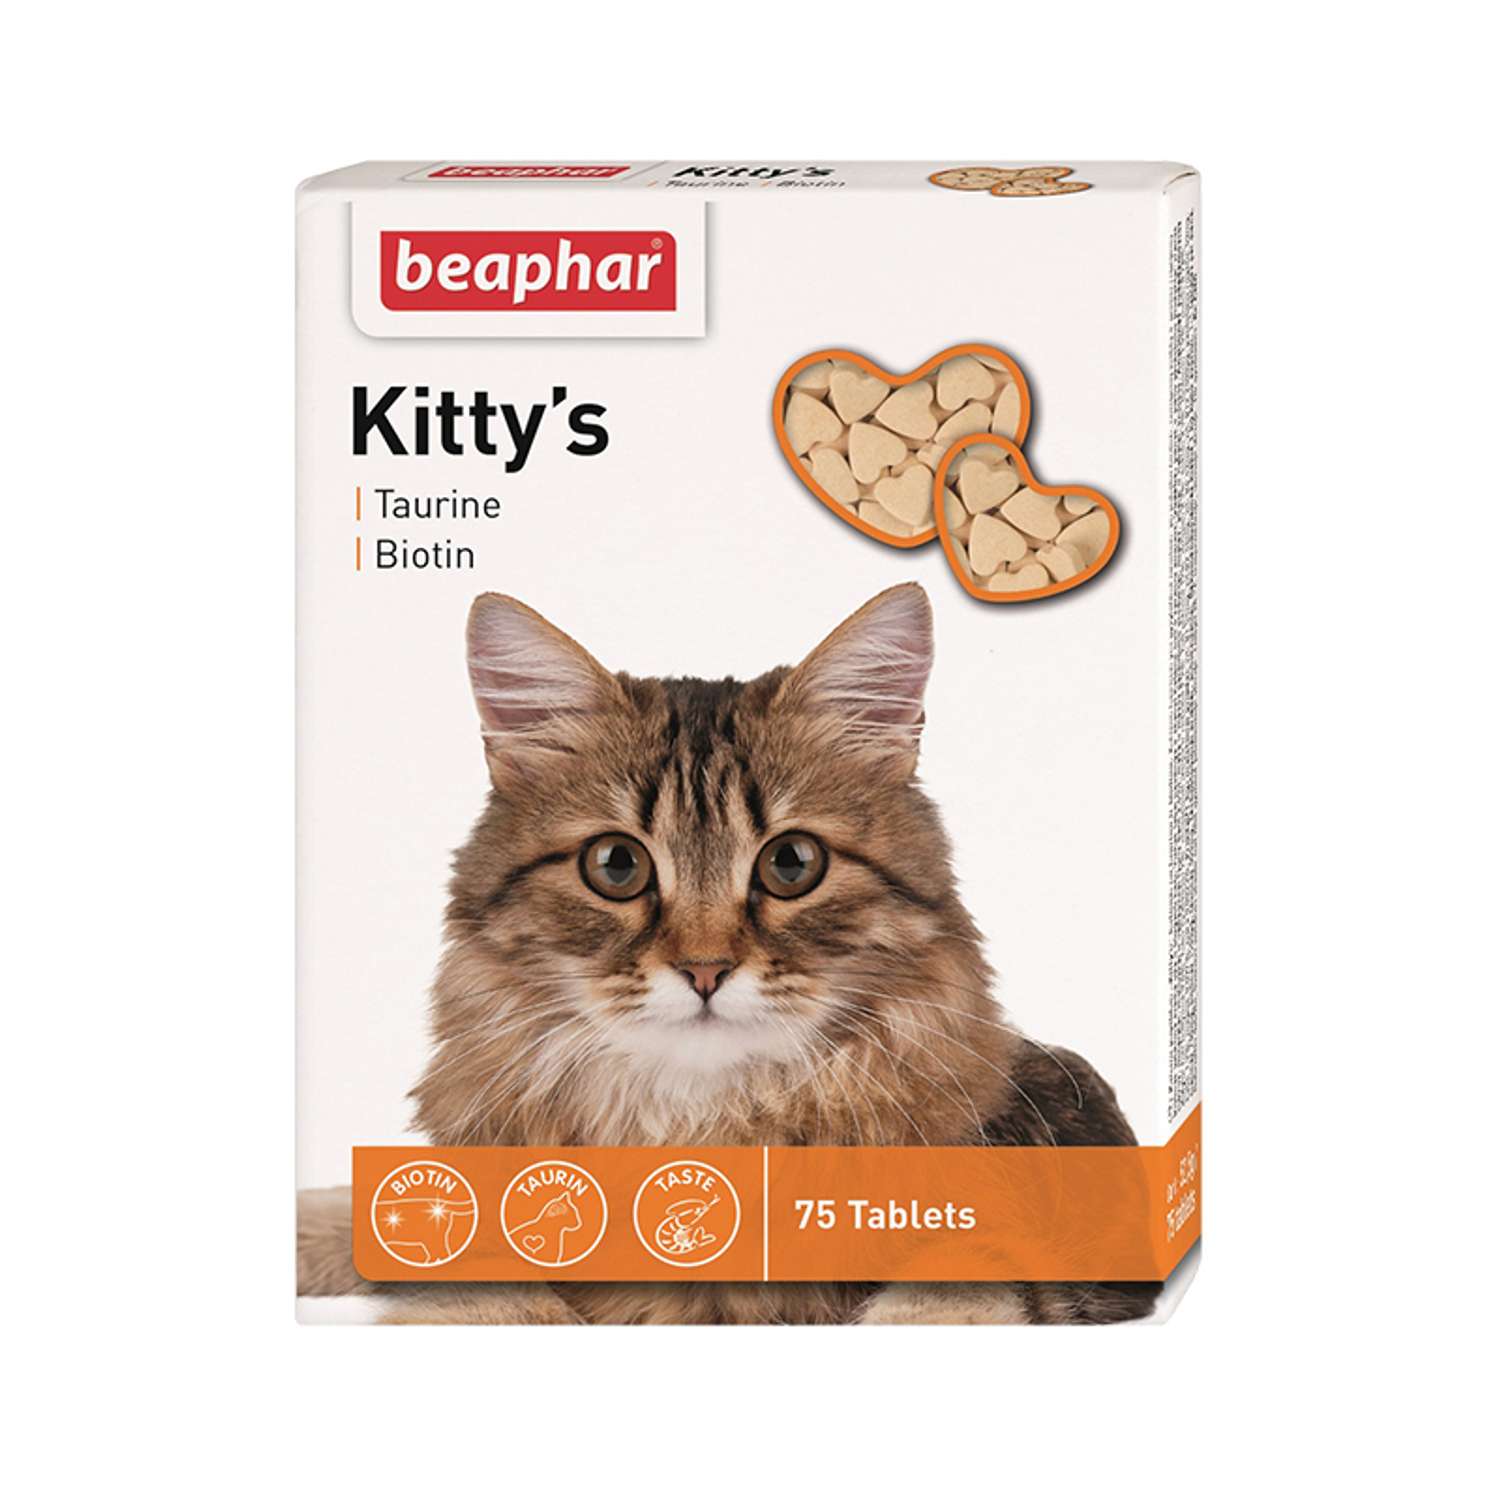 Витамины для кошек Beaphar Kittys Biotin таурин-биотин при недостатке витаминов 75таблеток - фото 1